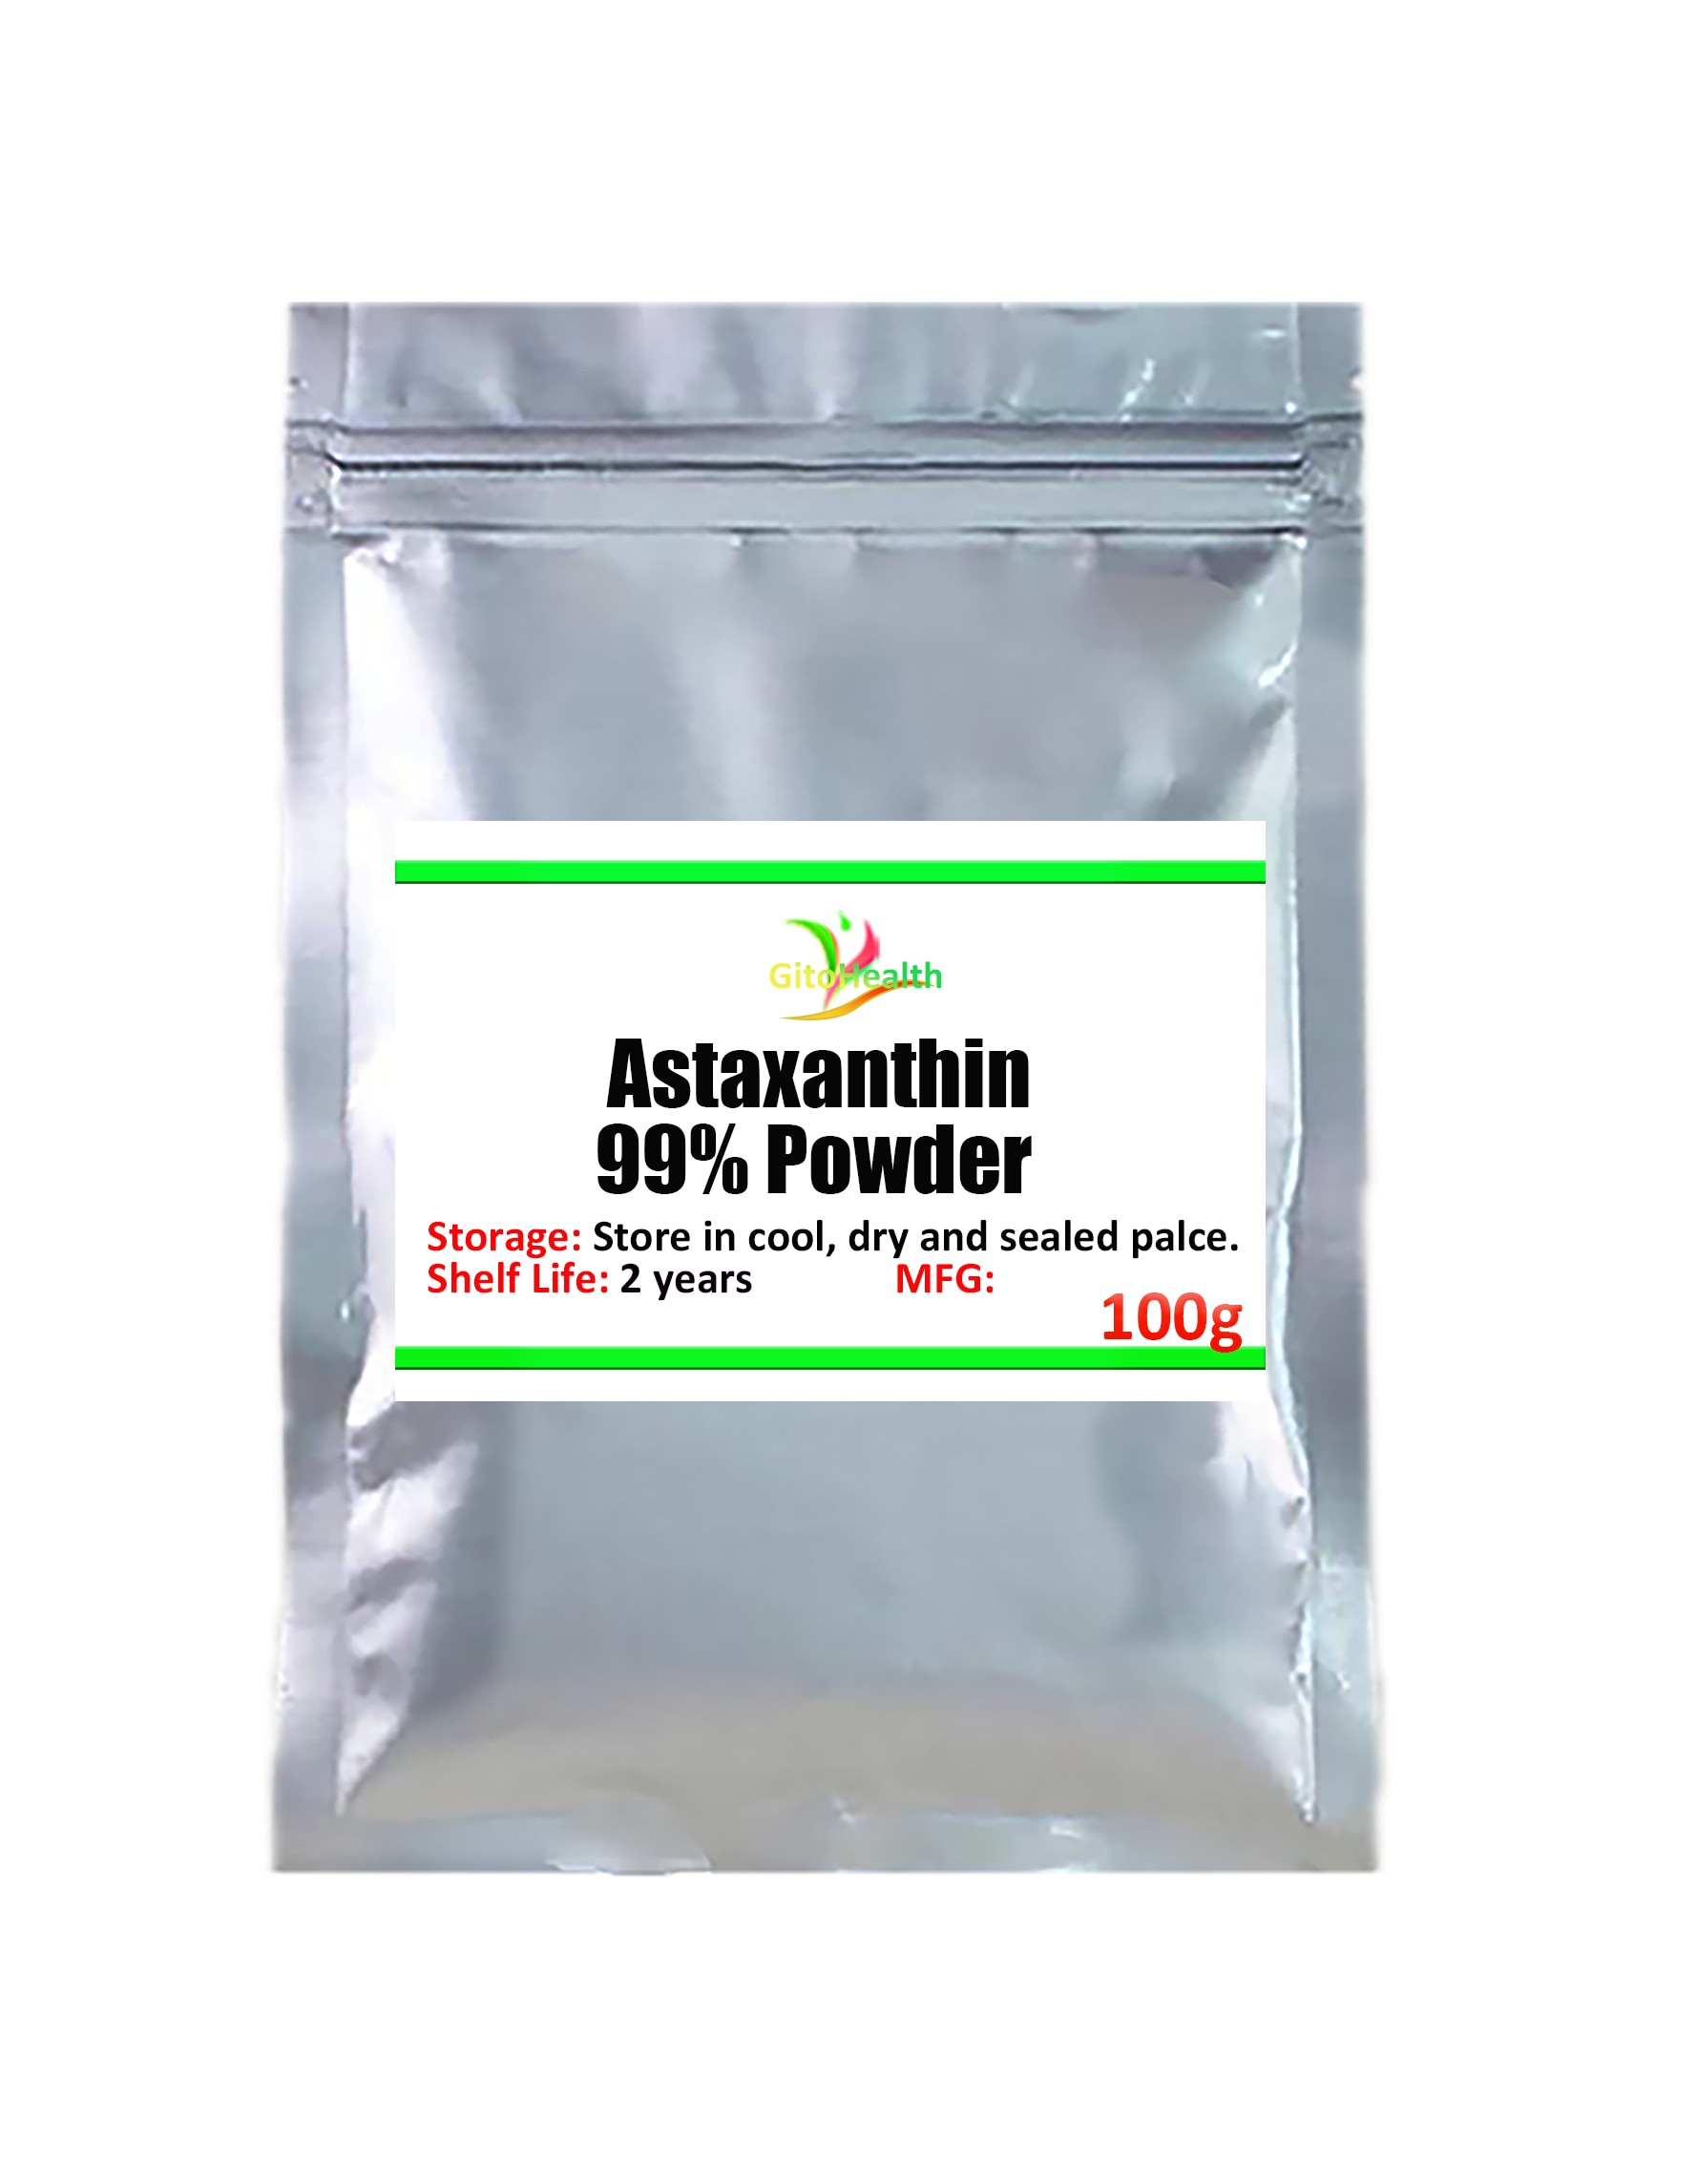 100g-1000g d'astaxanthine naturelle 99% en poudre